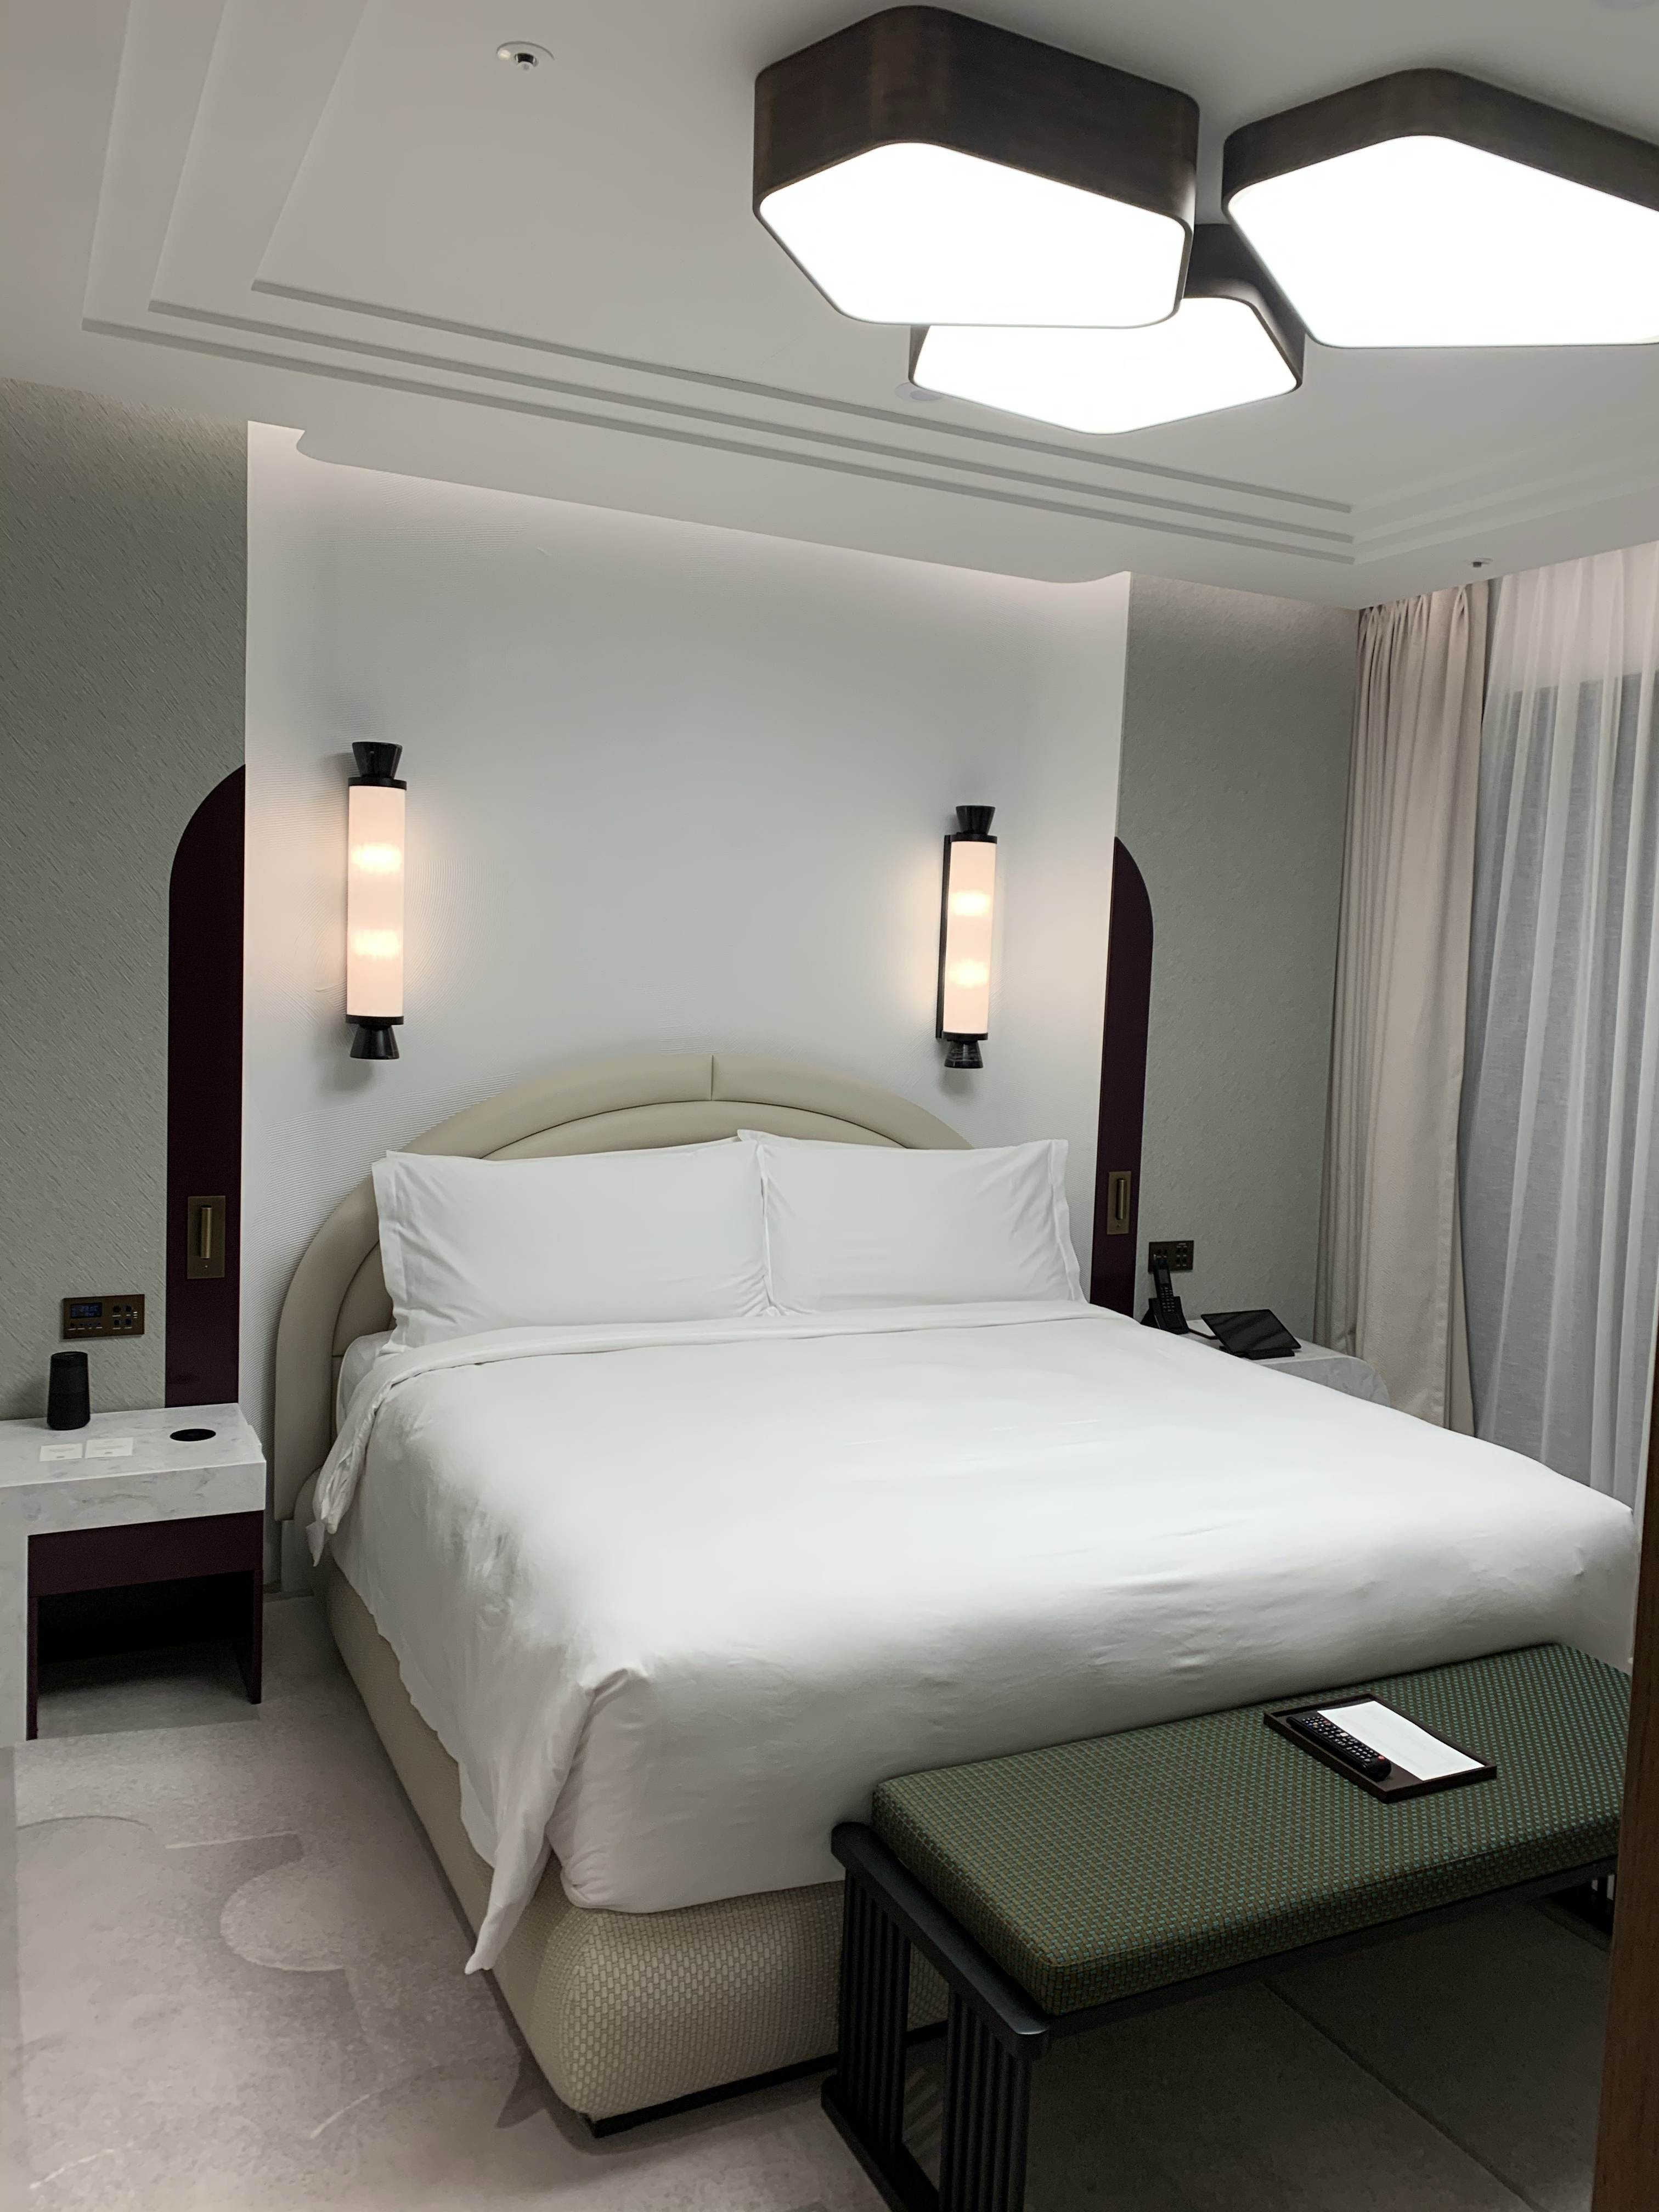 今次首爾之旅住了江南皇宮豪華精選酒店，Josun Palace，這個酒店品牌是萬豪旗下luxury品牌之一，之前都住過幾間豪華精選，評價十分不錯，今次也不例外